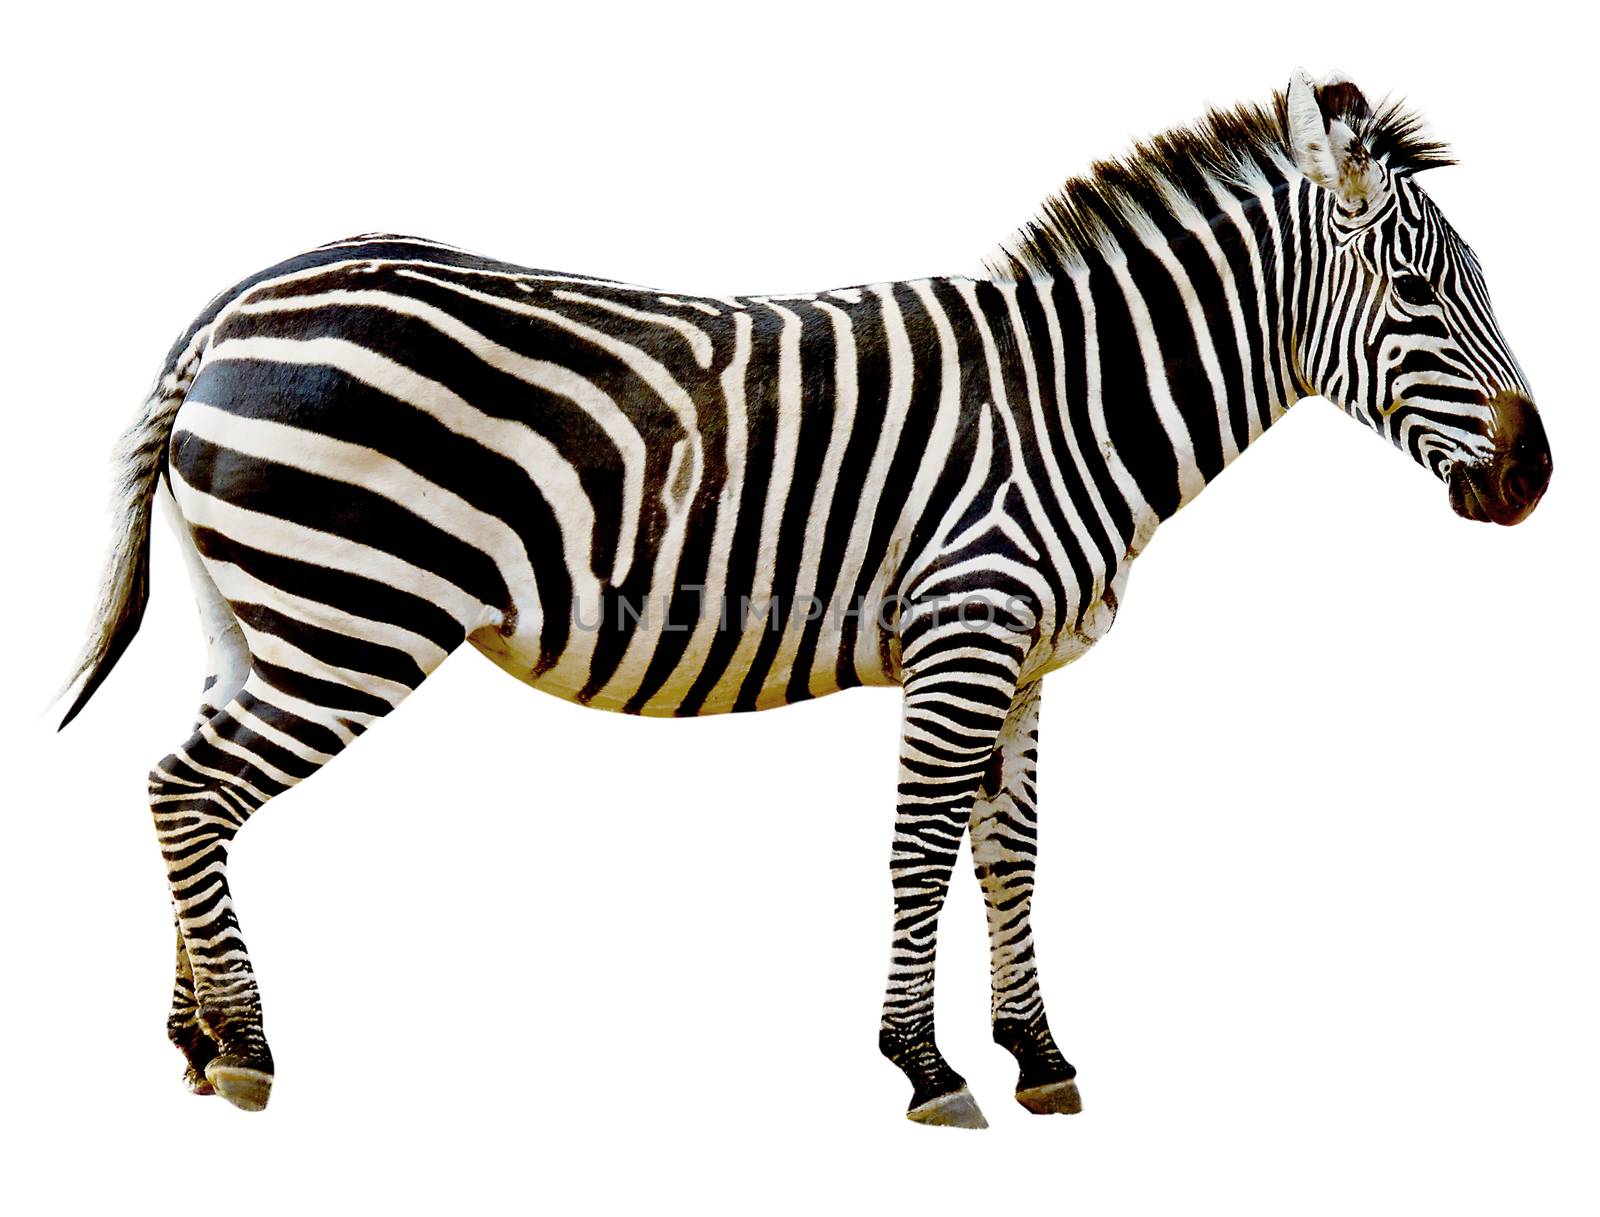 Wild zebra isolated on white background